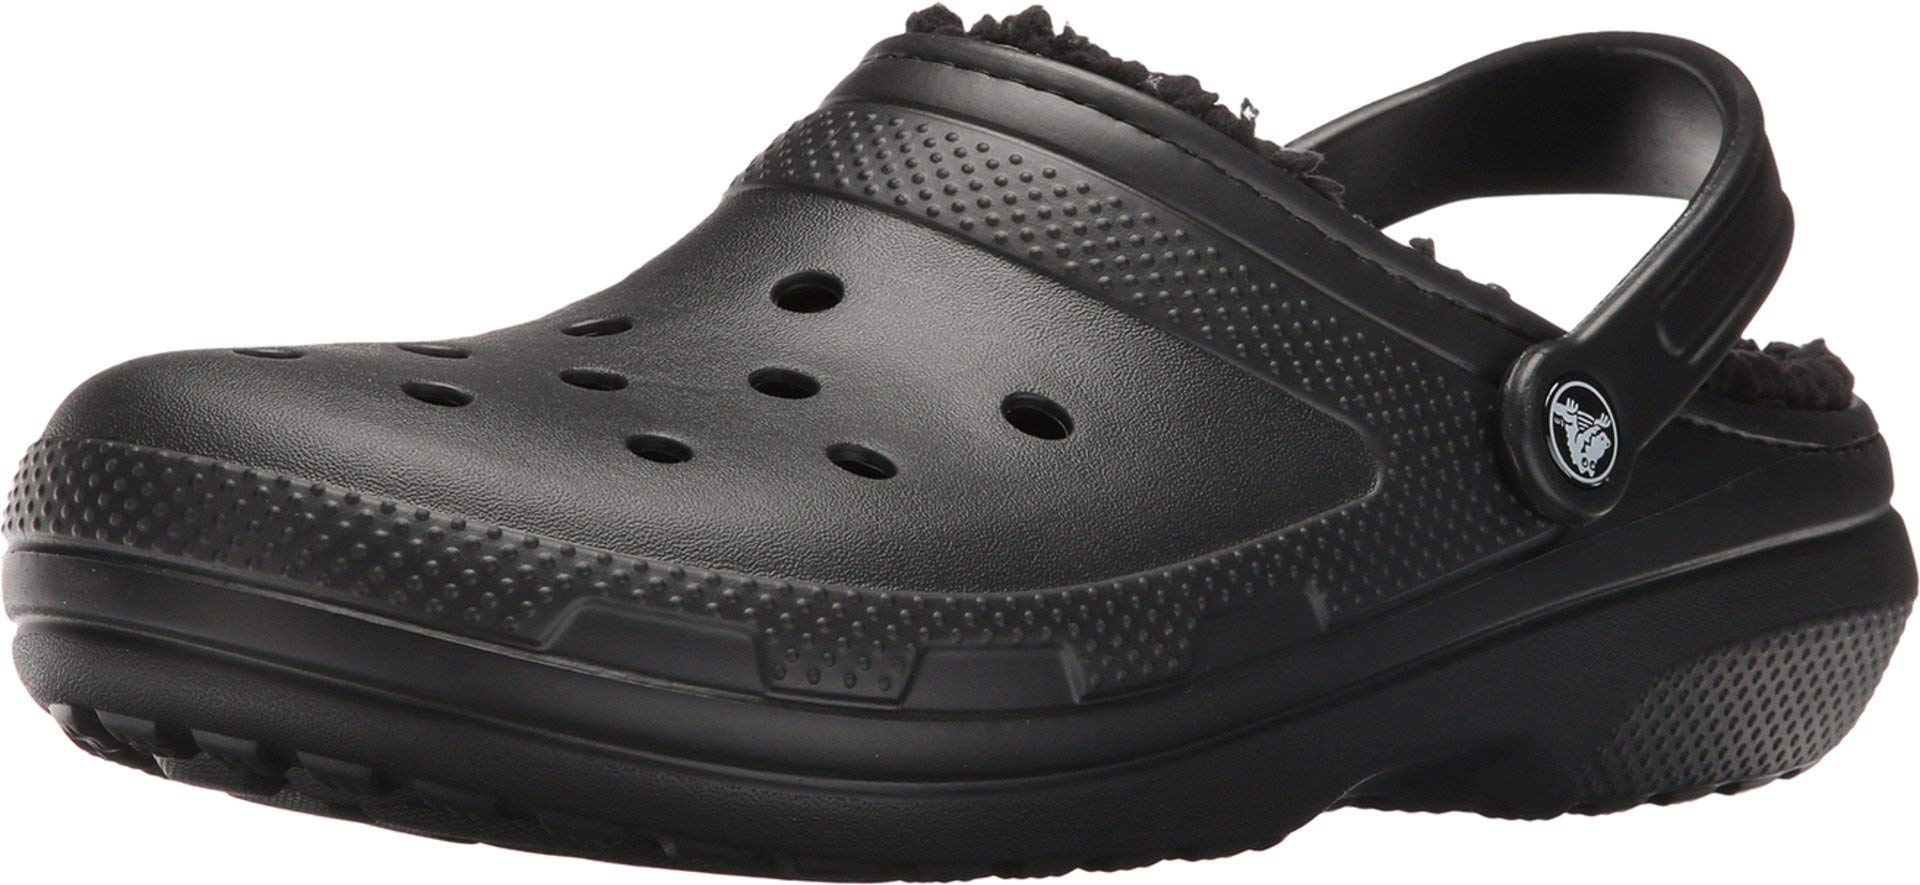 Crocs unisex-adult Classic Lined Clog Clog, Black/Black, 38/39 EU